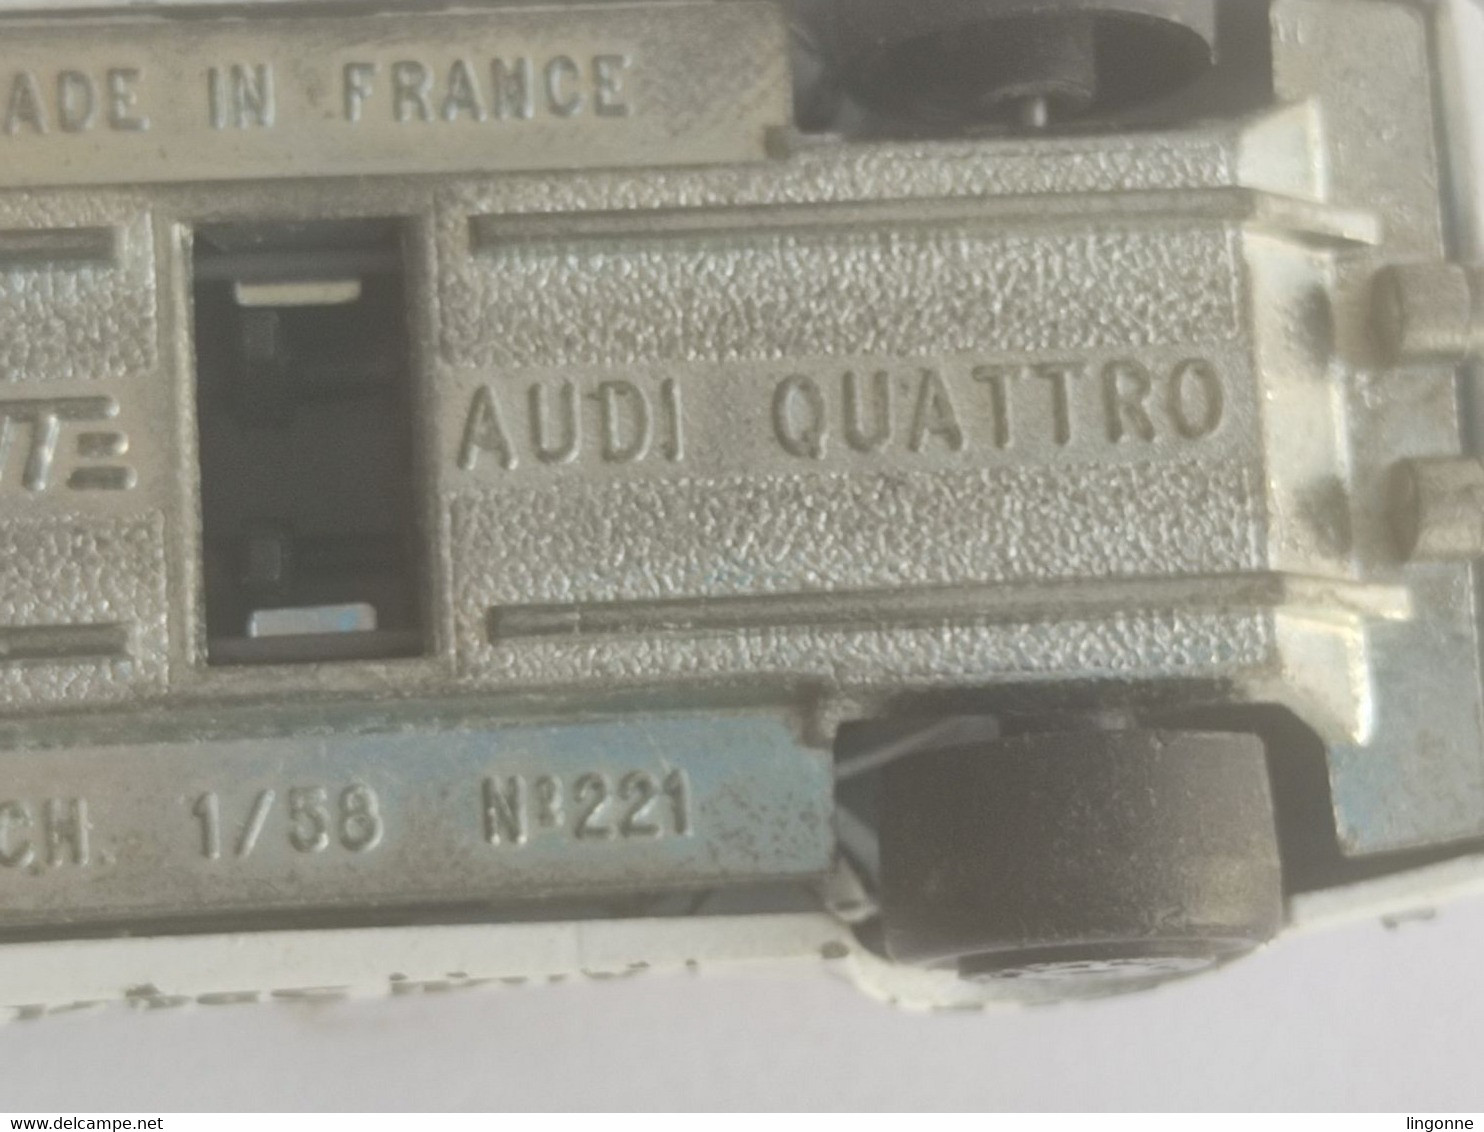 Majorette n°221, Audi quattro blanche, 1/58e